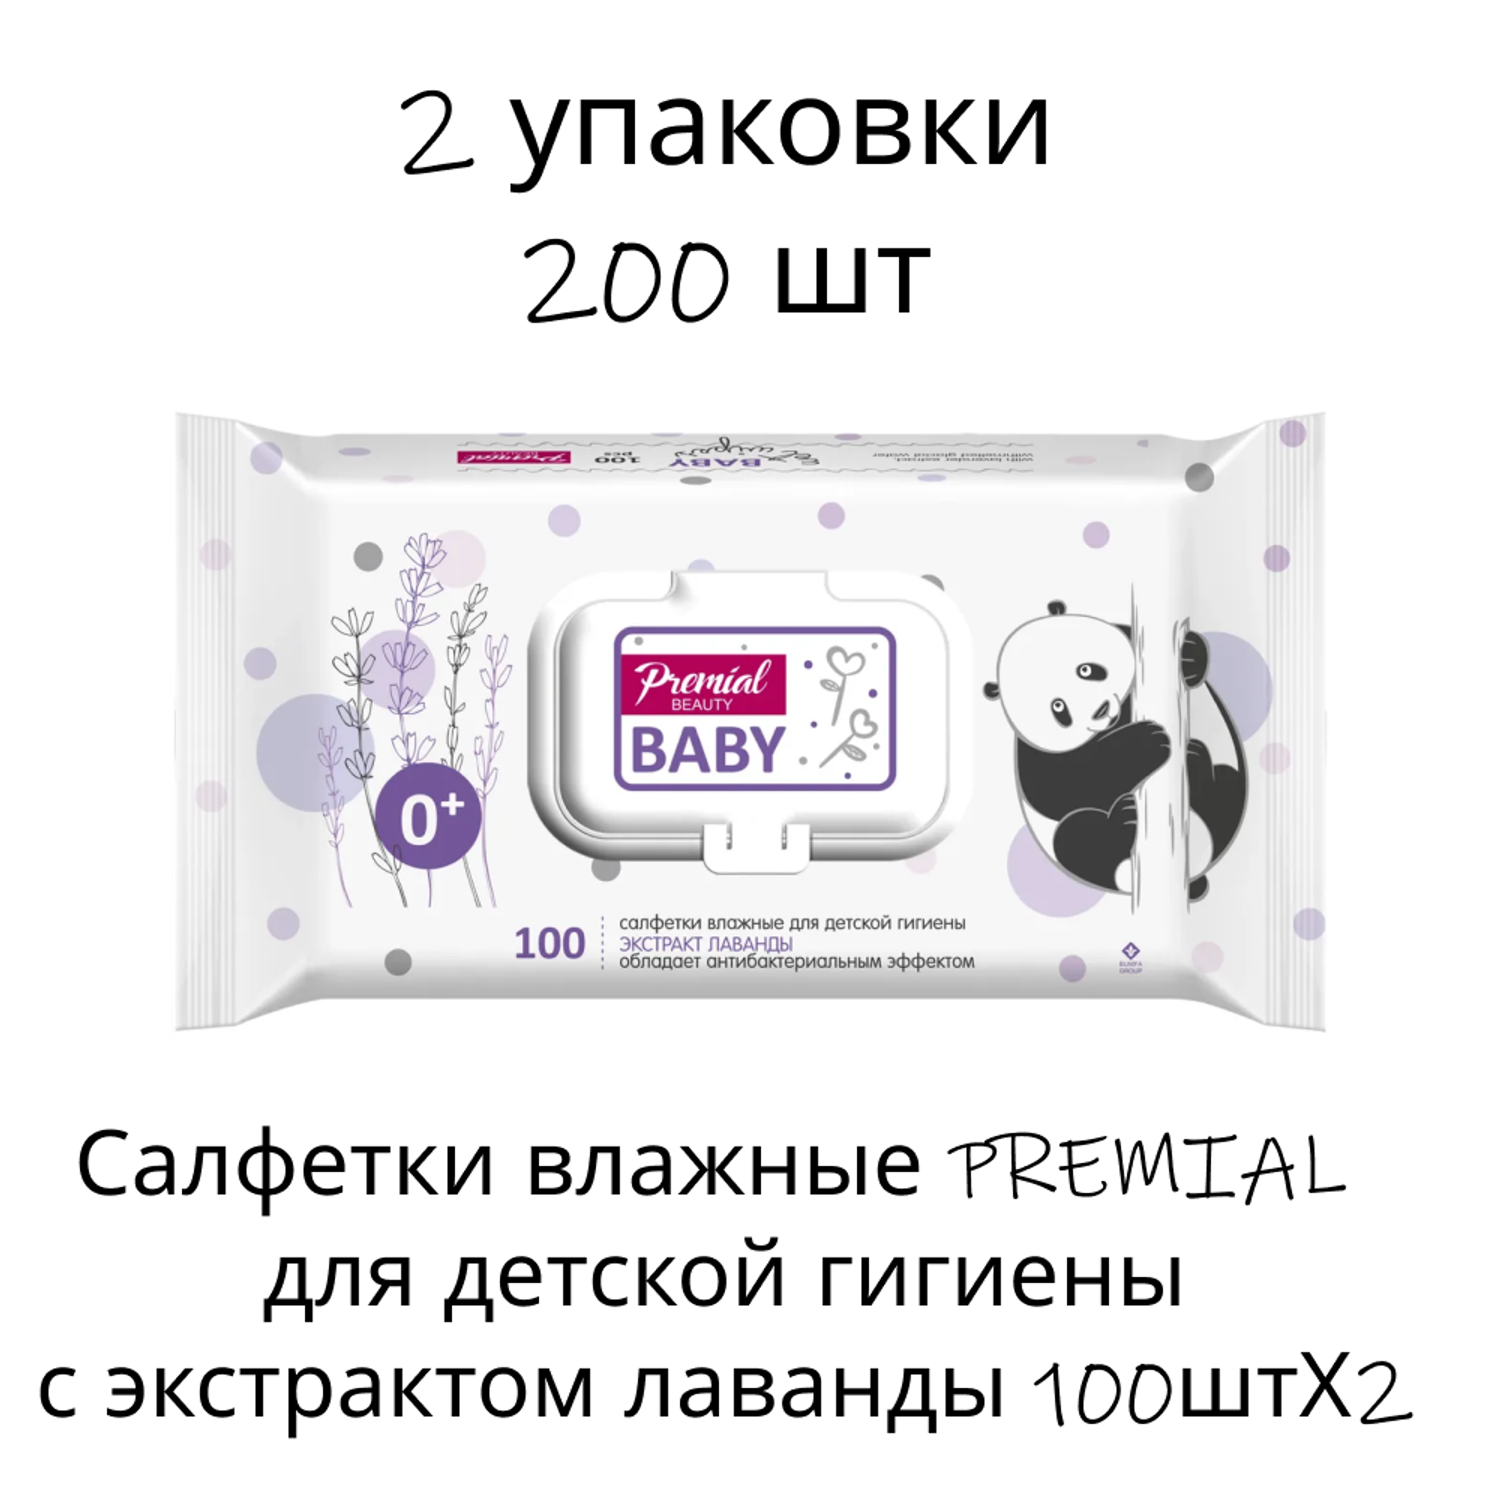 Салфетки влажные PREMIAL для детской гигиены с экстрактом лаванды 100штХ2 - фото 1